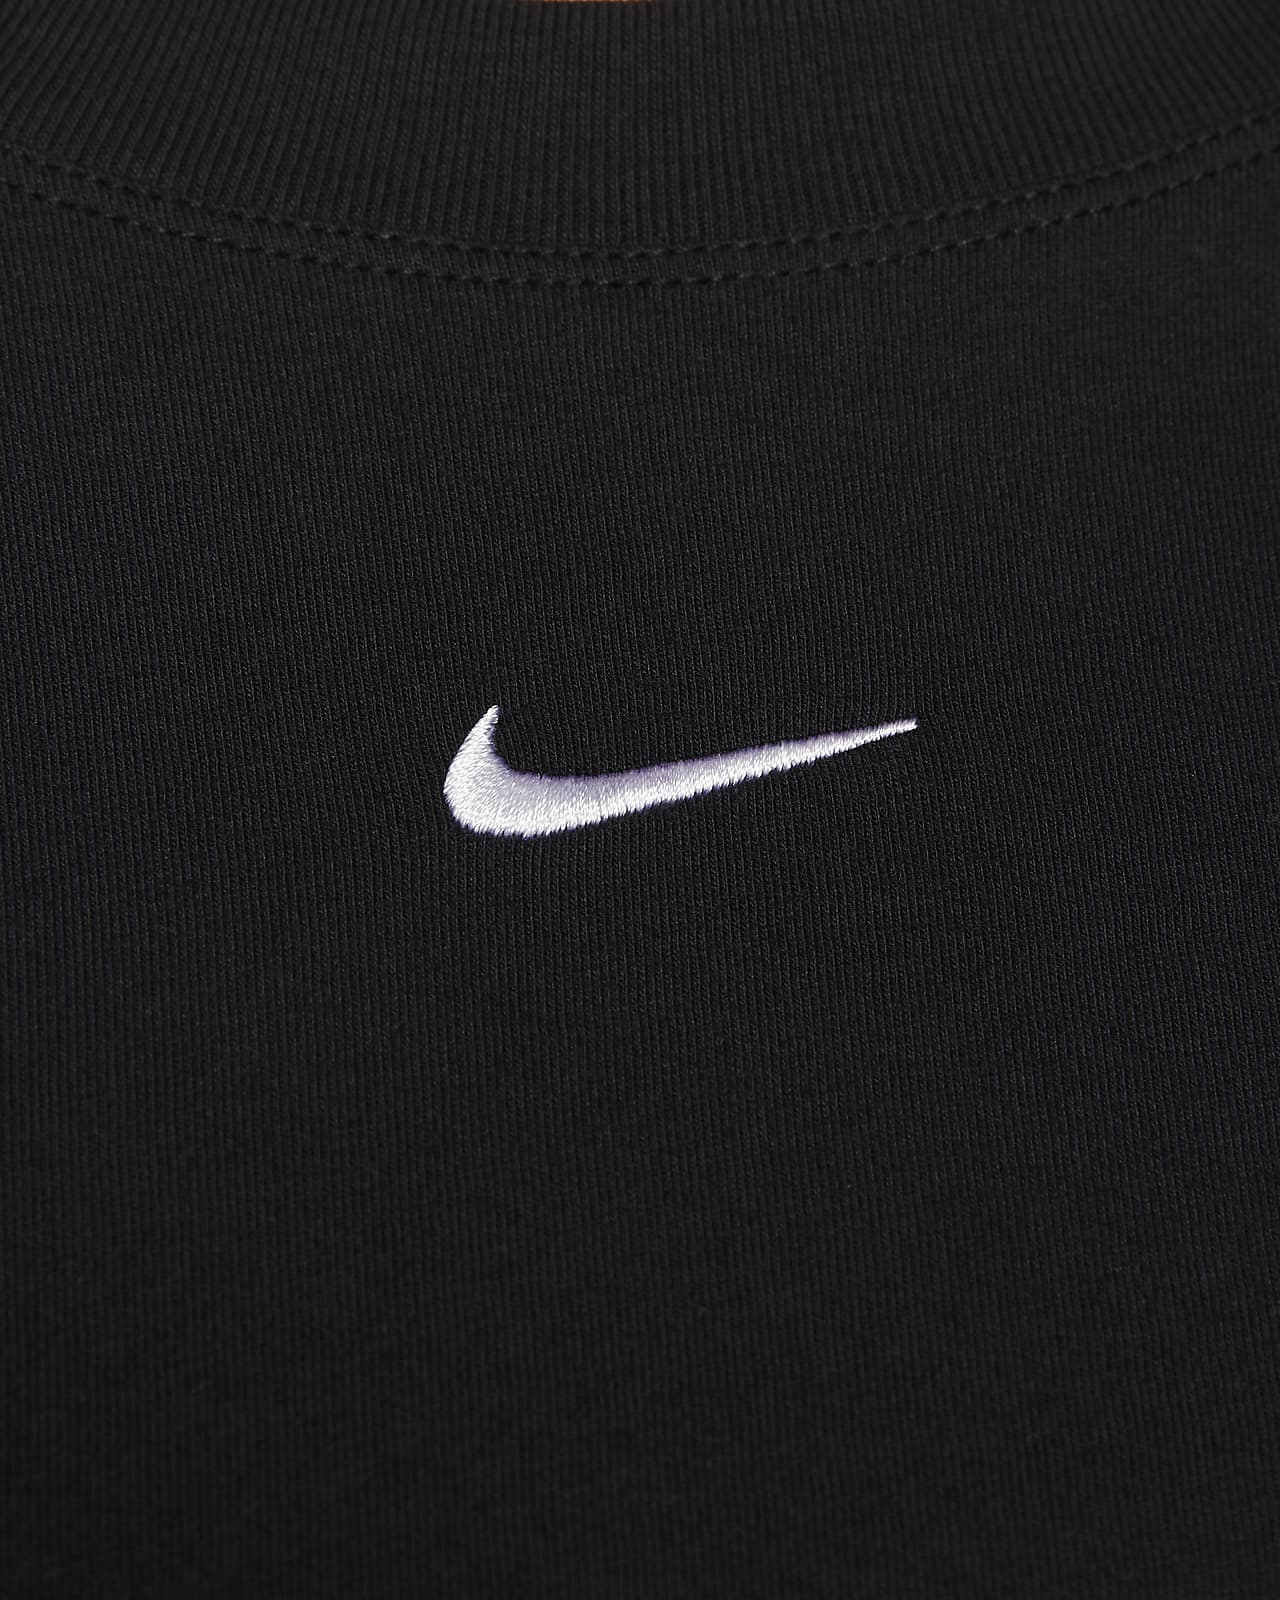 Nike Sportswear Essential Women's T-Shirt (Plus size)